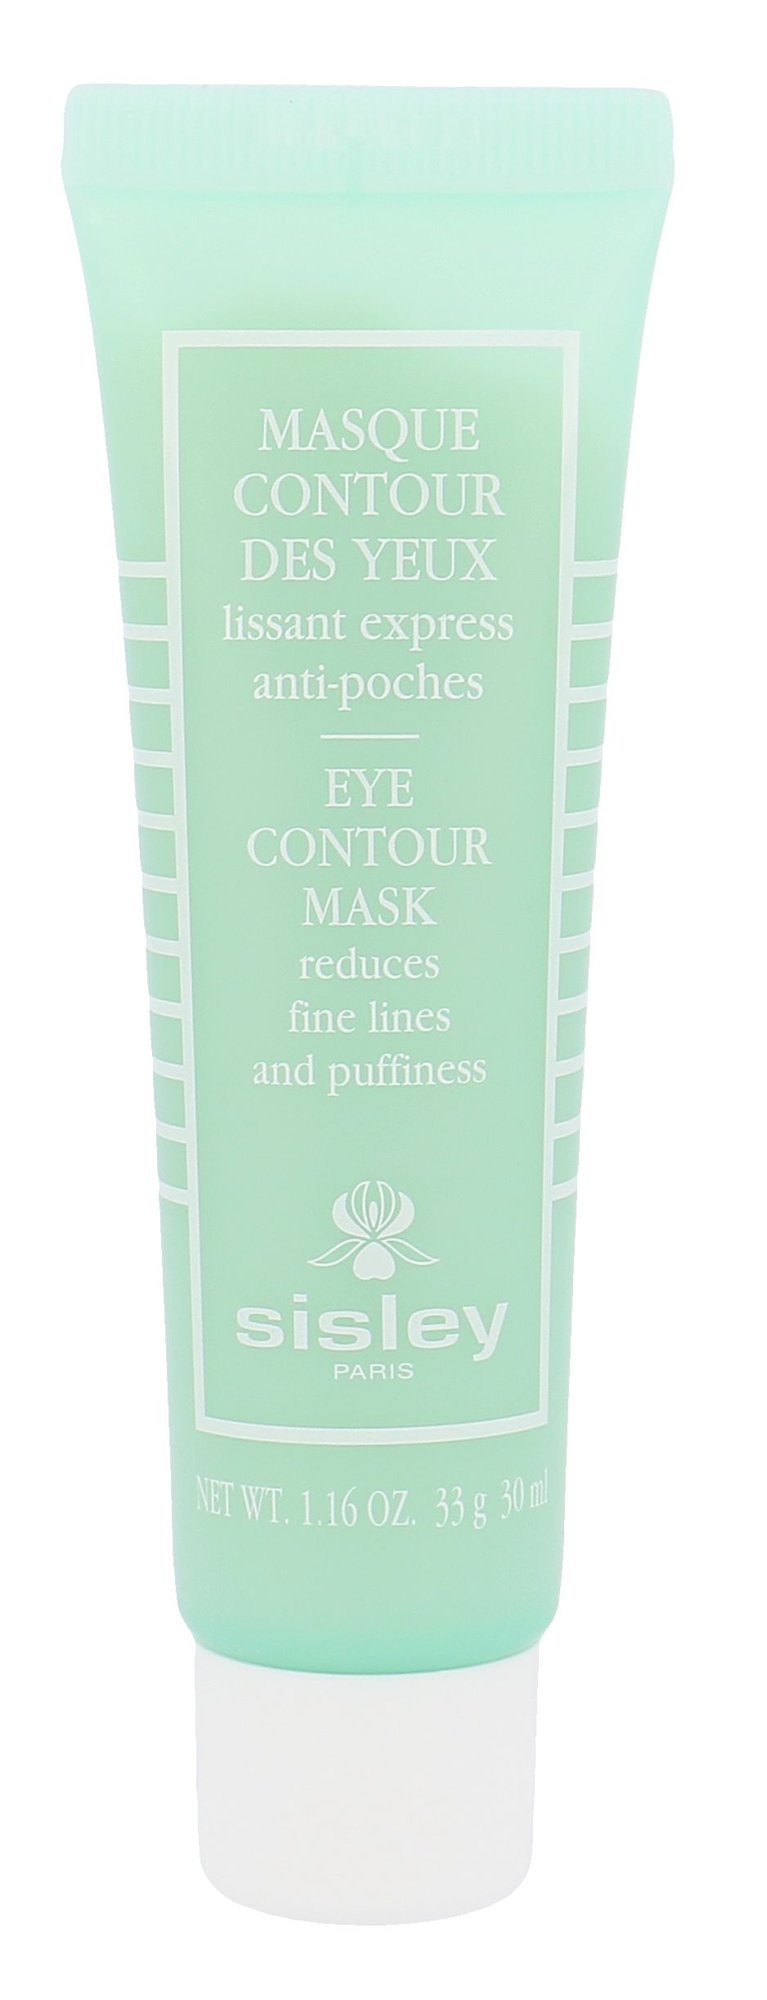 Sisley Eye Contour Mask 30ml NIŠINIAI paakių kaukė